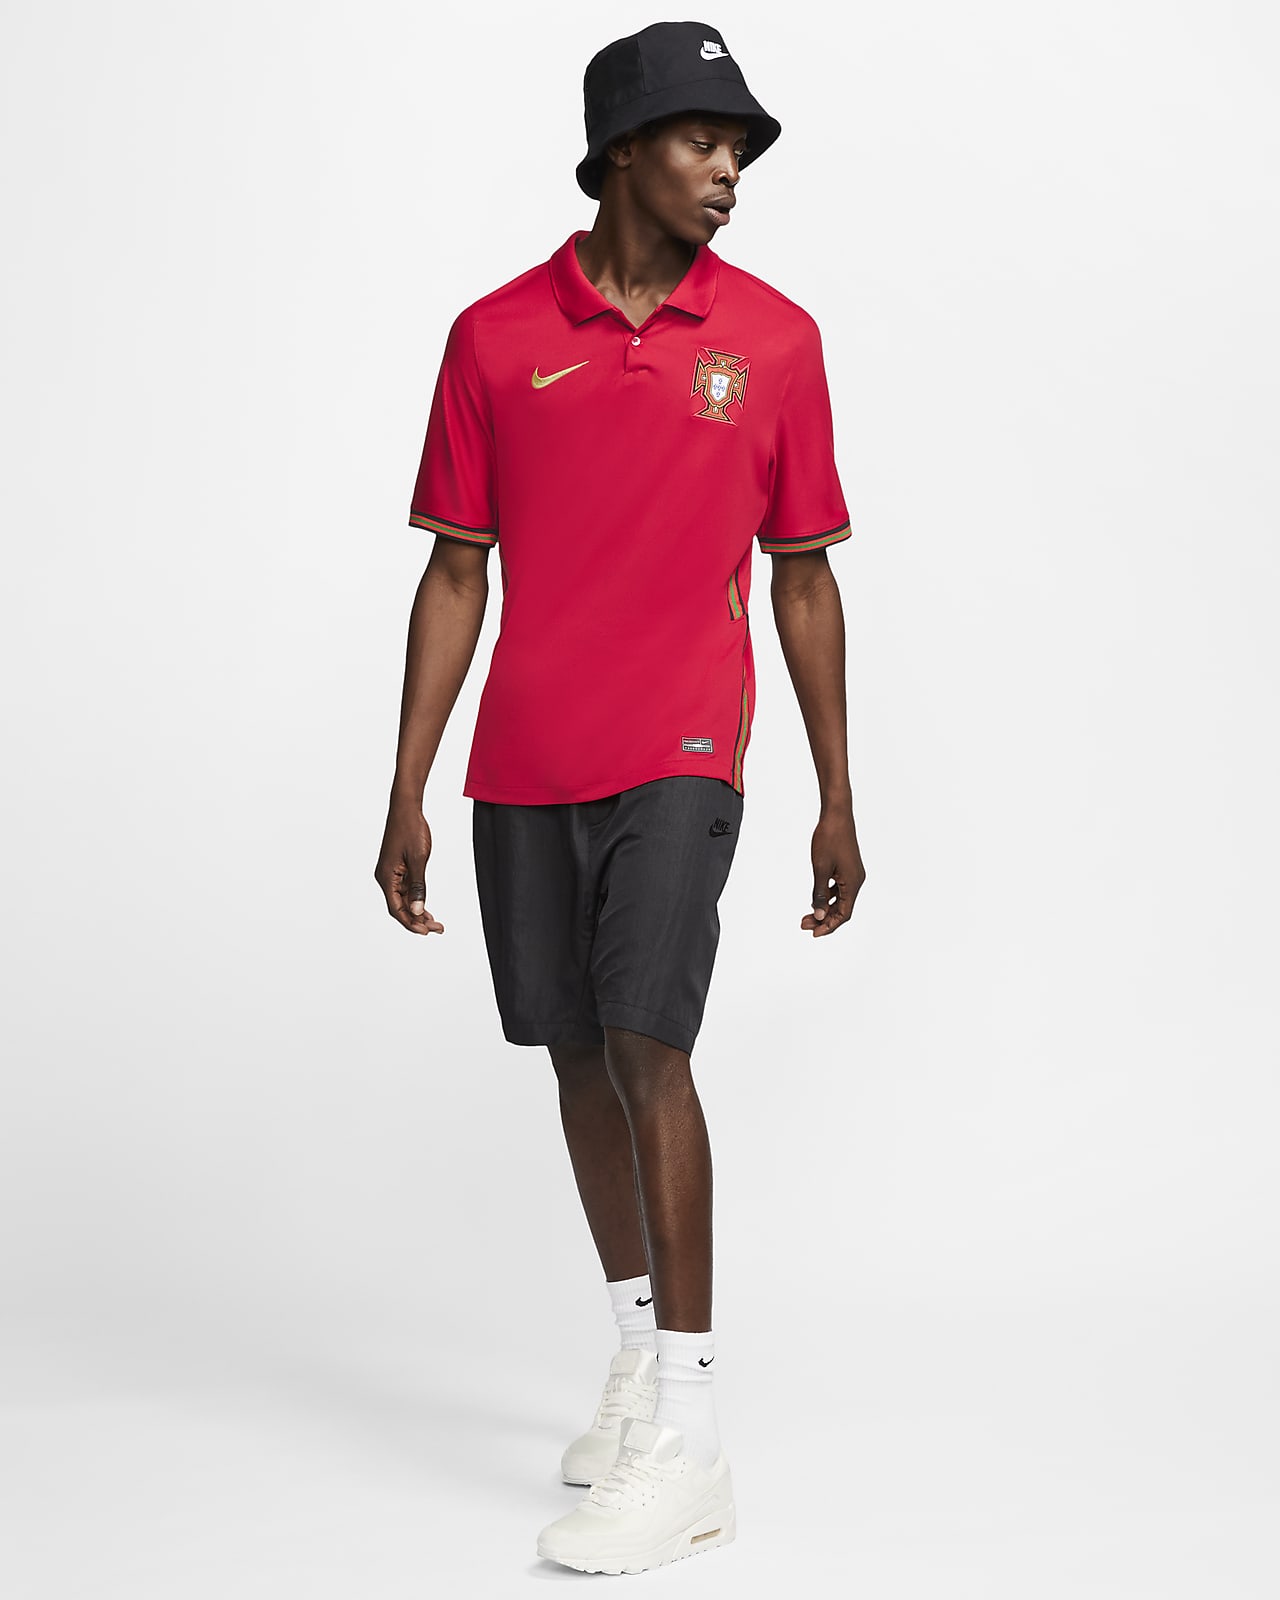 Nike公式 ポルトガル スタジアム ホーム メンズ サッカーユニフォーム オンラインストア 通販サイト